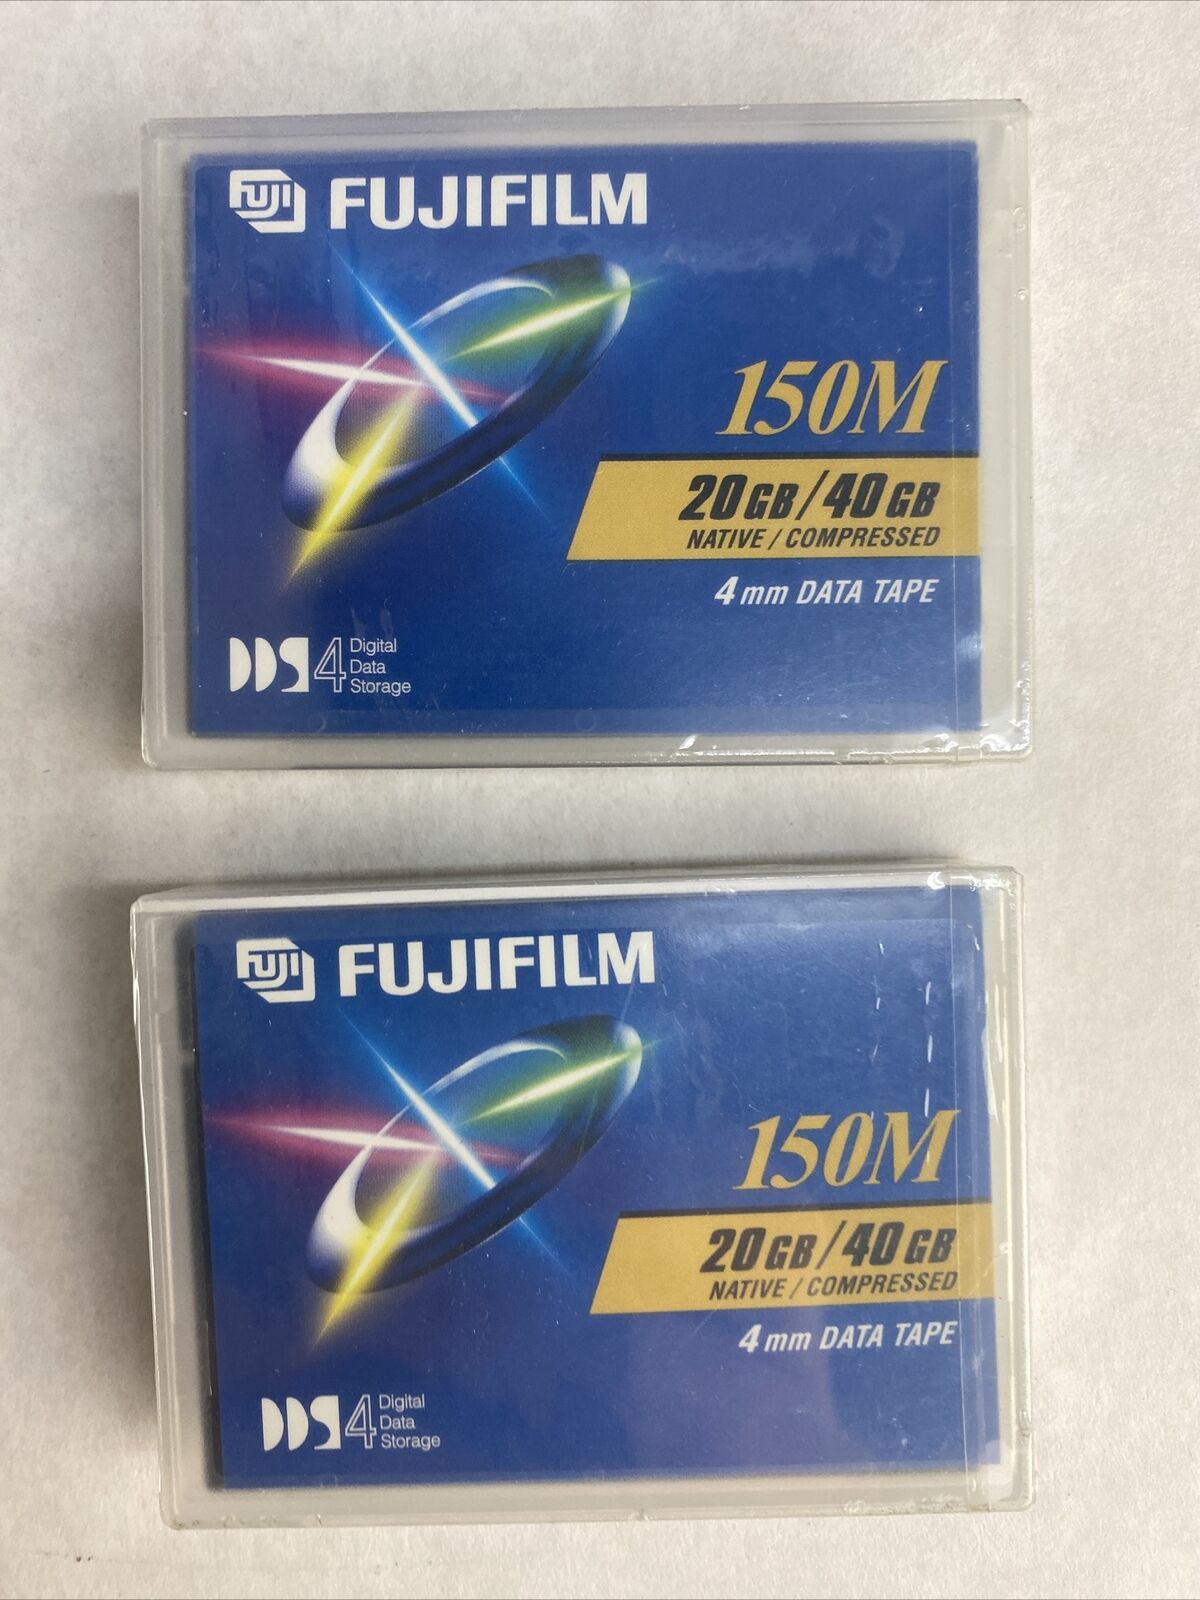 Lot( 2 ) New Fujifilm 150M 4mm Data Tape 20GB Native / 40 GB Compressed